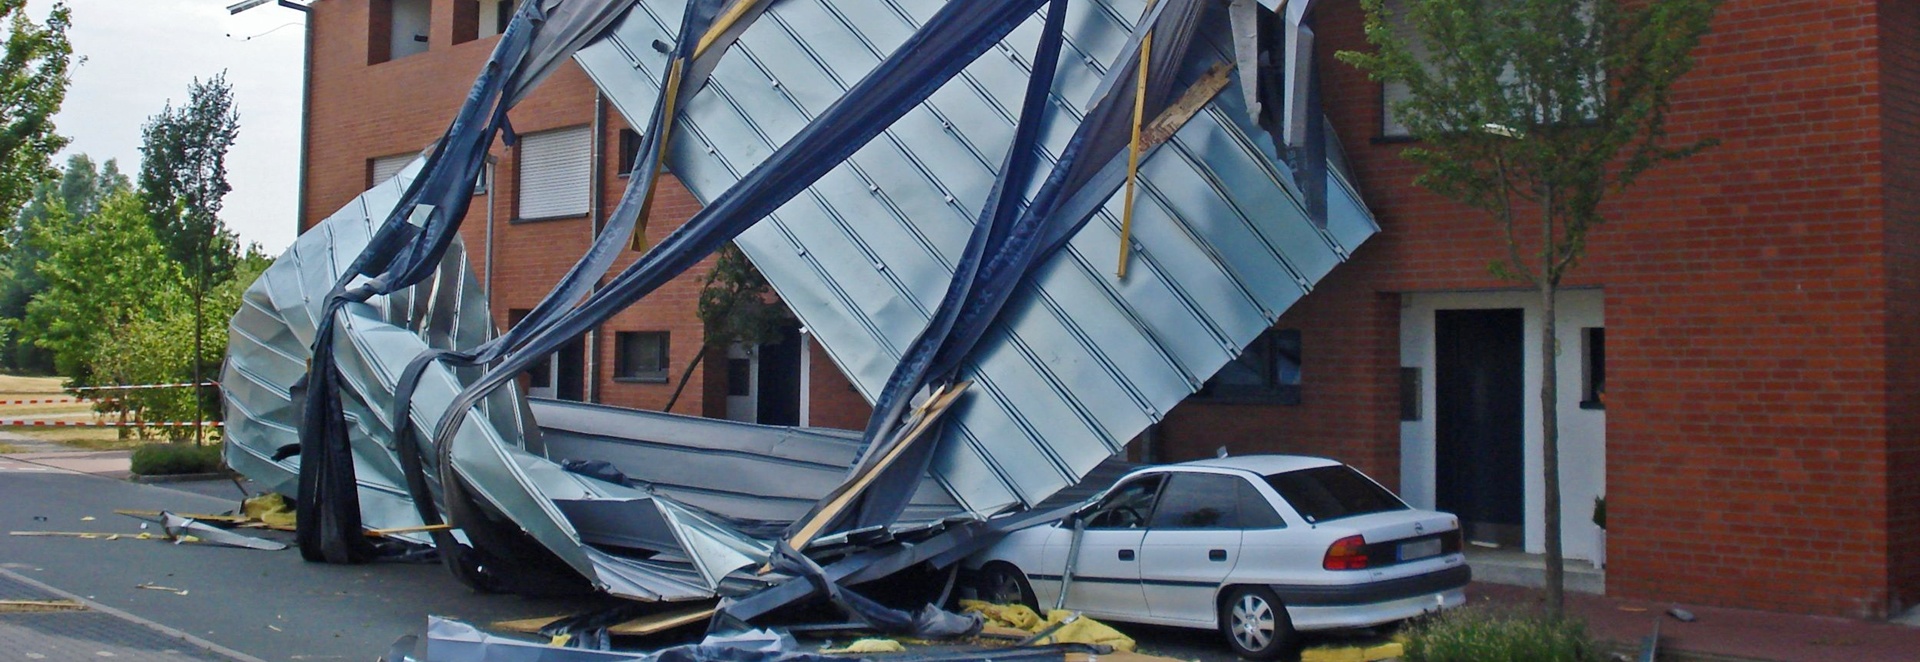 Wir zeigen Ihnen, welche Versicherung bei Sturmschäden an Gewerbeimmobilien wirklich zahlt